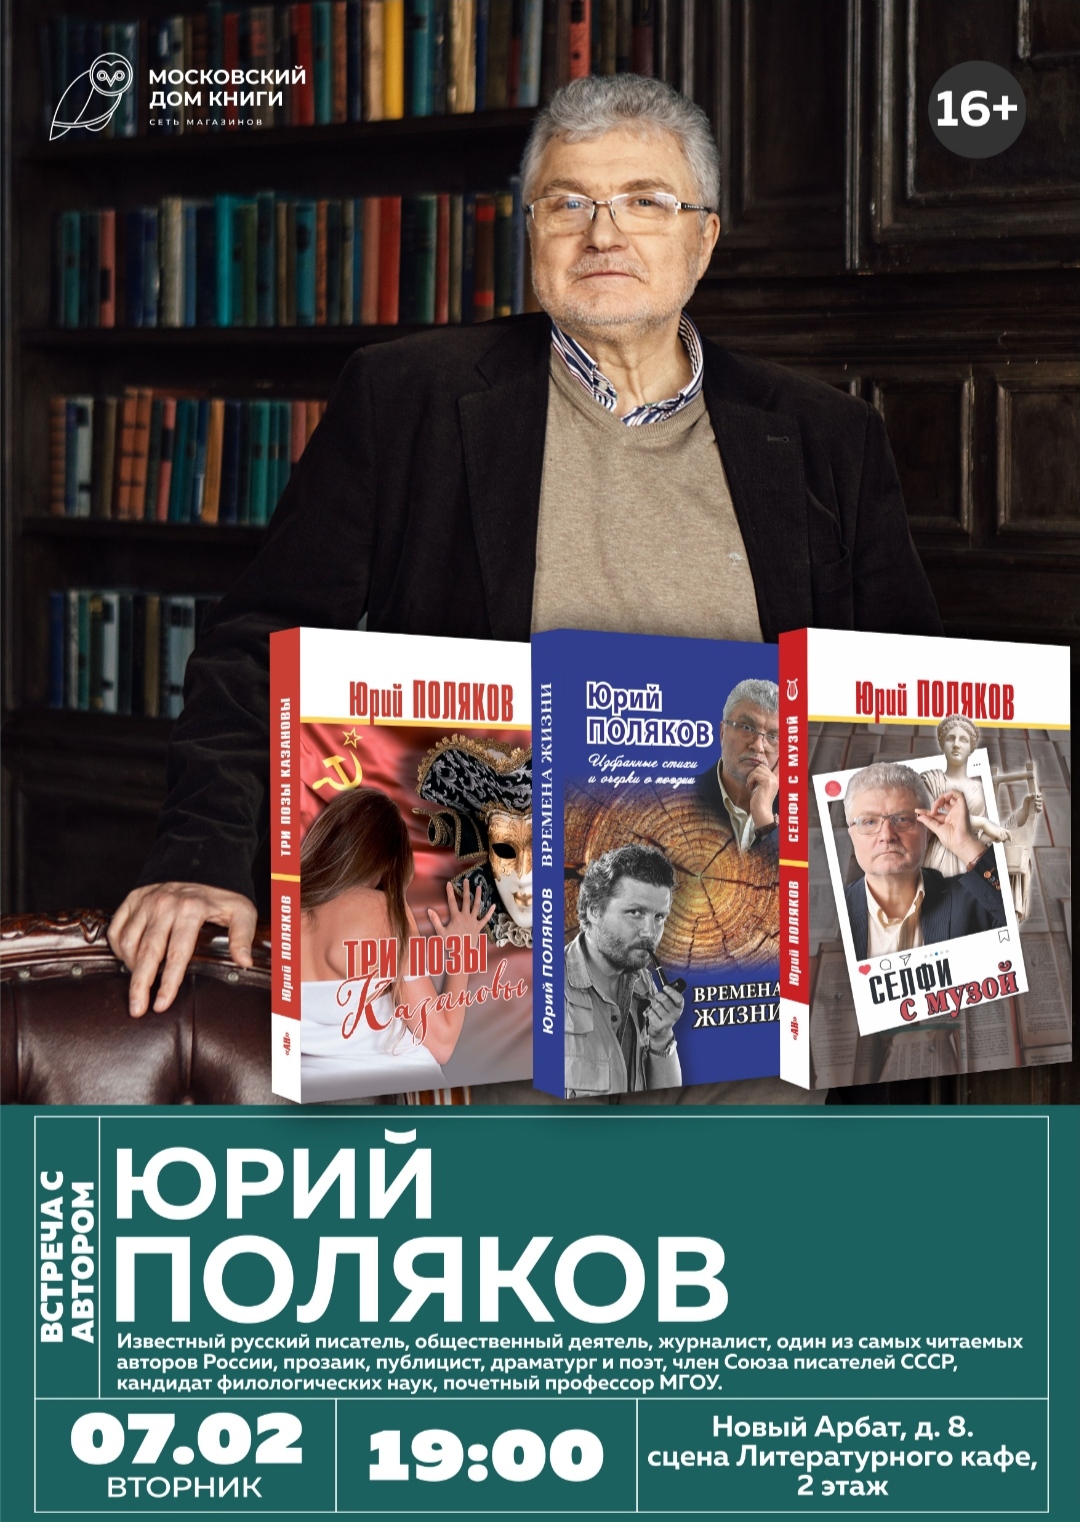 Писатель Юрий Поляков встретится с читателями 7 февраля в МДК на Арбате​